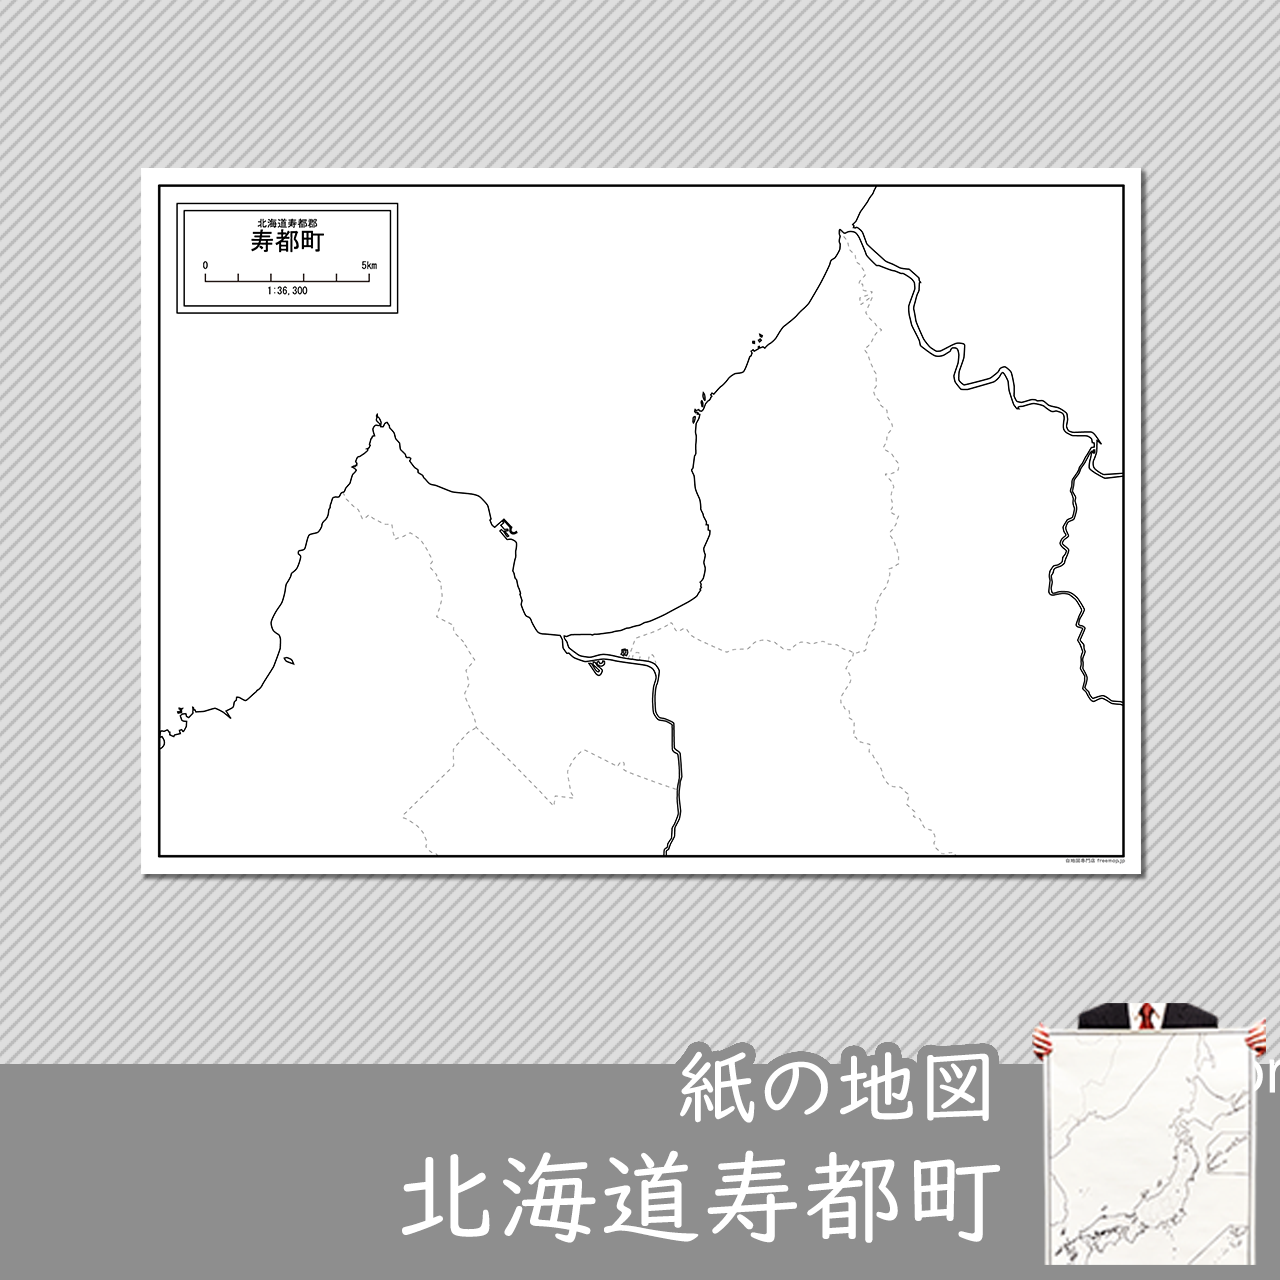 寿都町の紙の白地図のサムネイル